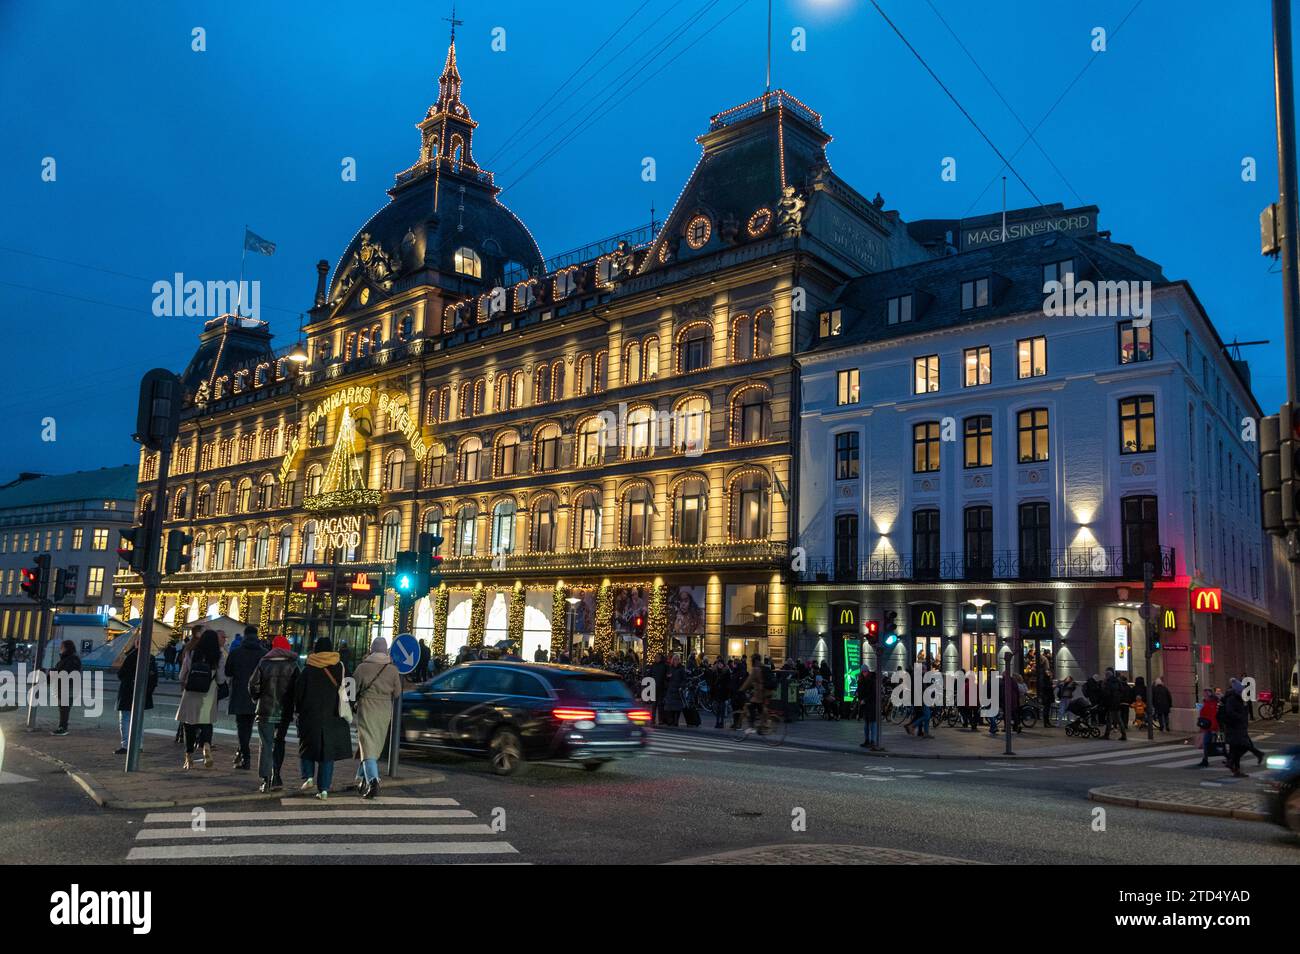 Le luci natalizie illuminano Envii - Magasin - un grande negozio di negozi vicino alla grande rotatoria, Kongens Nytorv (Piazza nuova del Re) nei pressi di Foto Stock